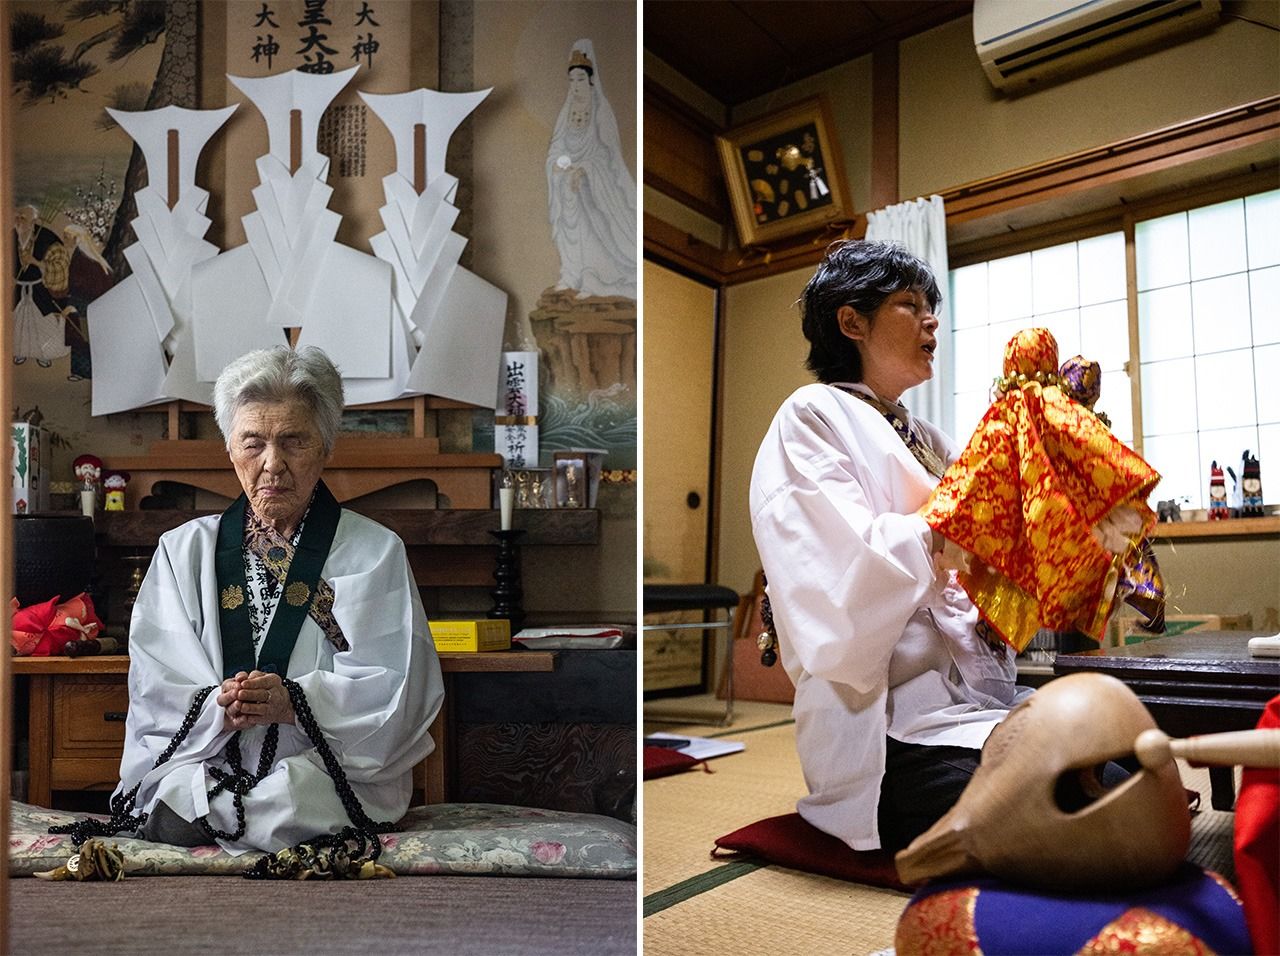 ناكامورا تاكي (يسار) وماتسودا هيروكو (يمين). تقوم ماتسودا الآن بأداء مراسم أوشيراساما أسوباسي النادرة التي تجرى في شهر يناير/كانون الثاني للإله المنزلي أوشيراساما (حقوق الصورة لآيا واتادا).